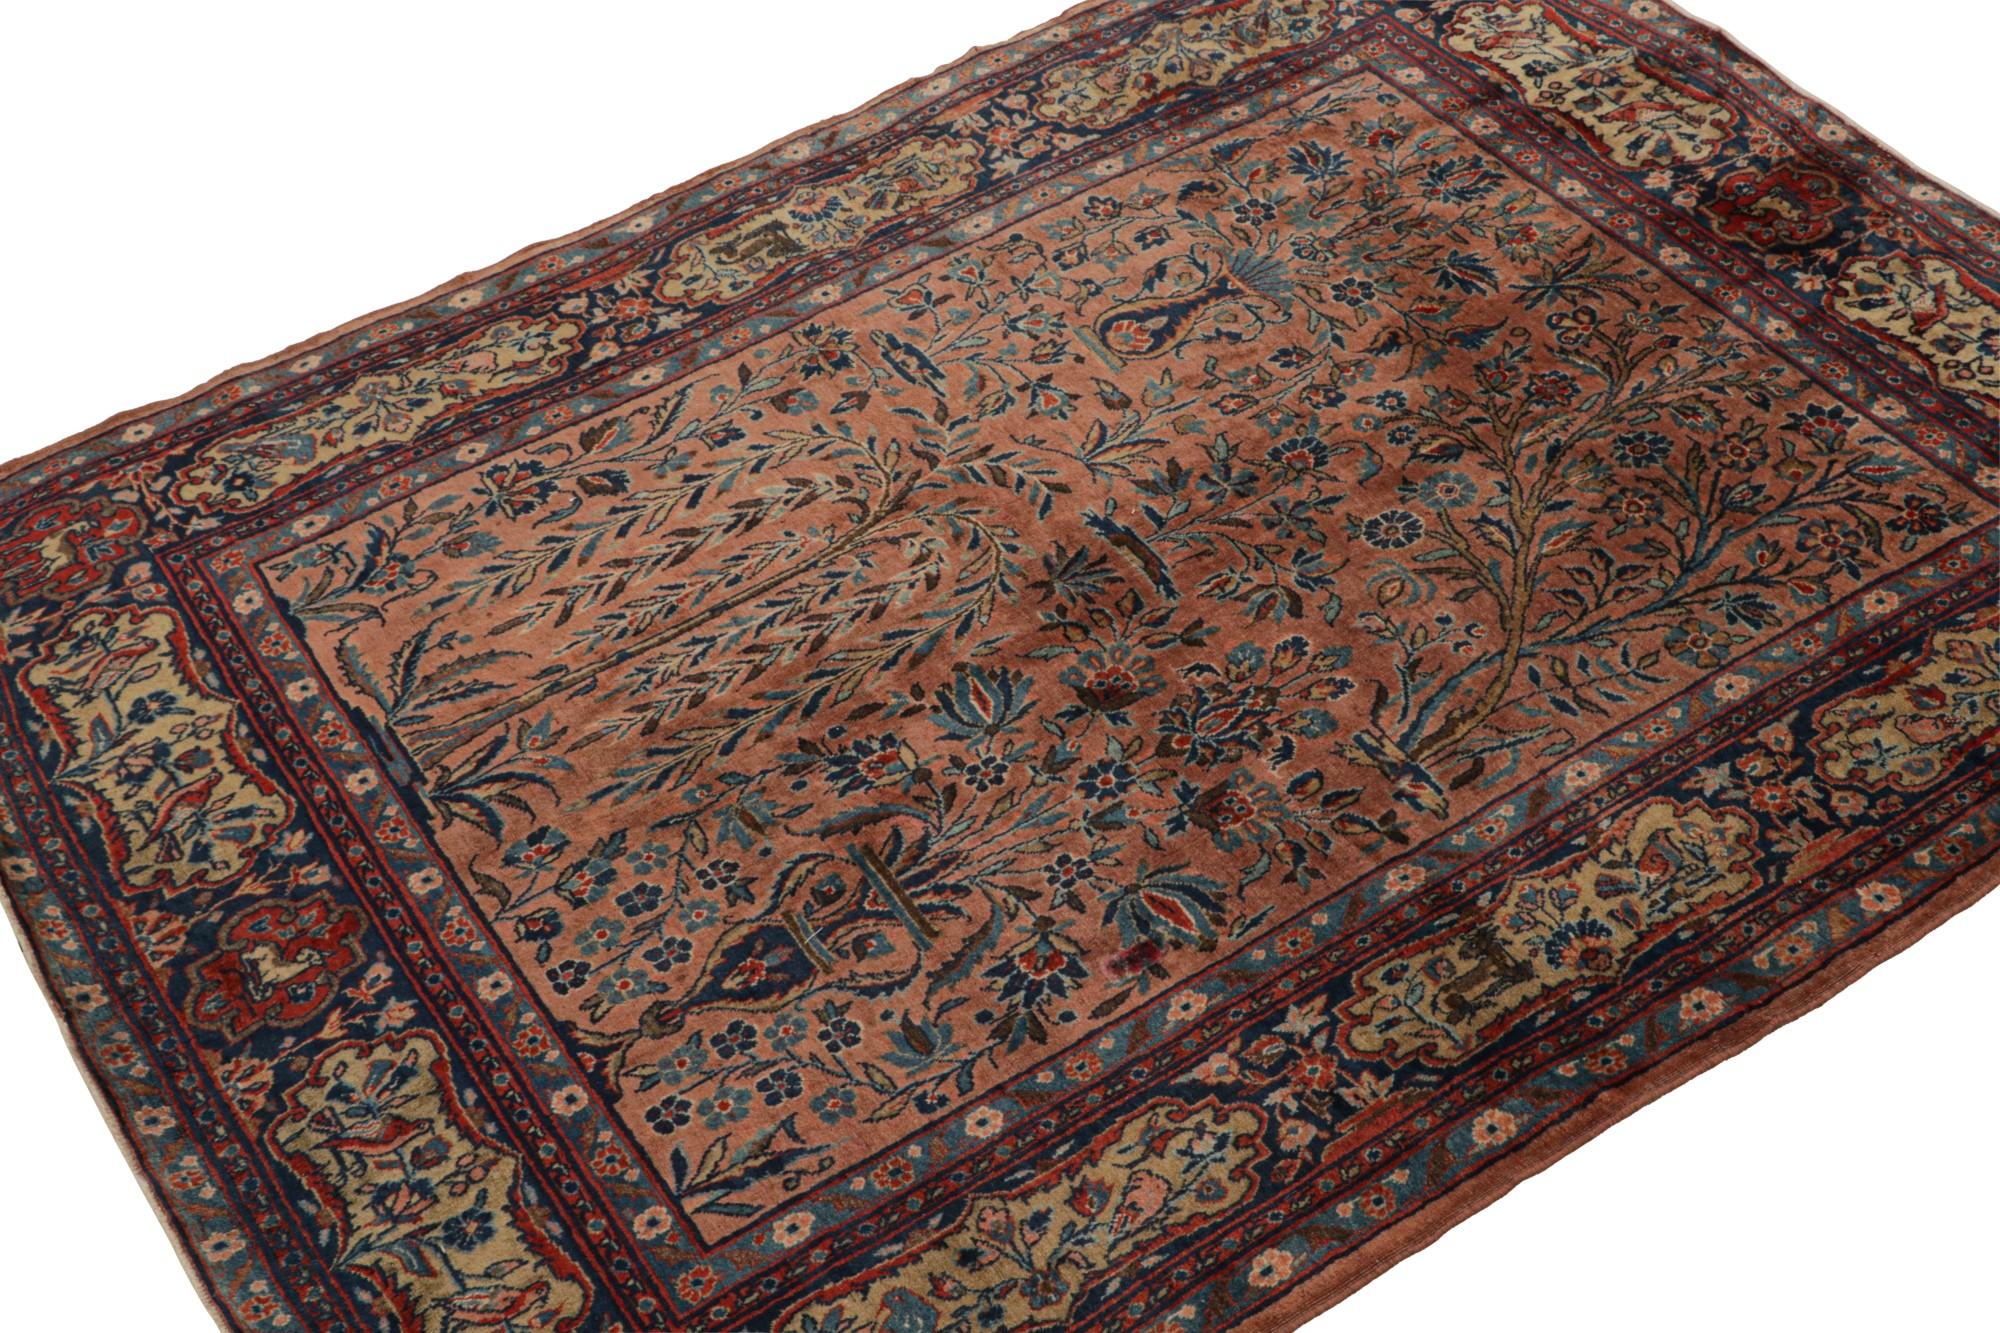 Dieser antike persische Kashan-Teppich im Format 4x5 wurde von Hand aus Wolle geknüpft und zeigt ein seltenes Muster mit floralen Mustern, Kartuschen in der Bordüre und Bildern in einem asymmetrischen Feldstil. 

Über das Design: 

Bewunderer des